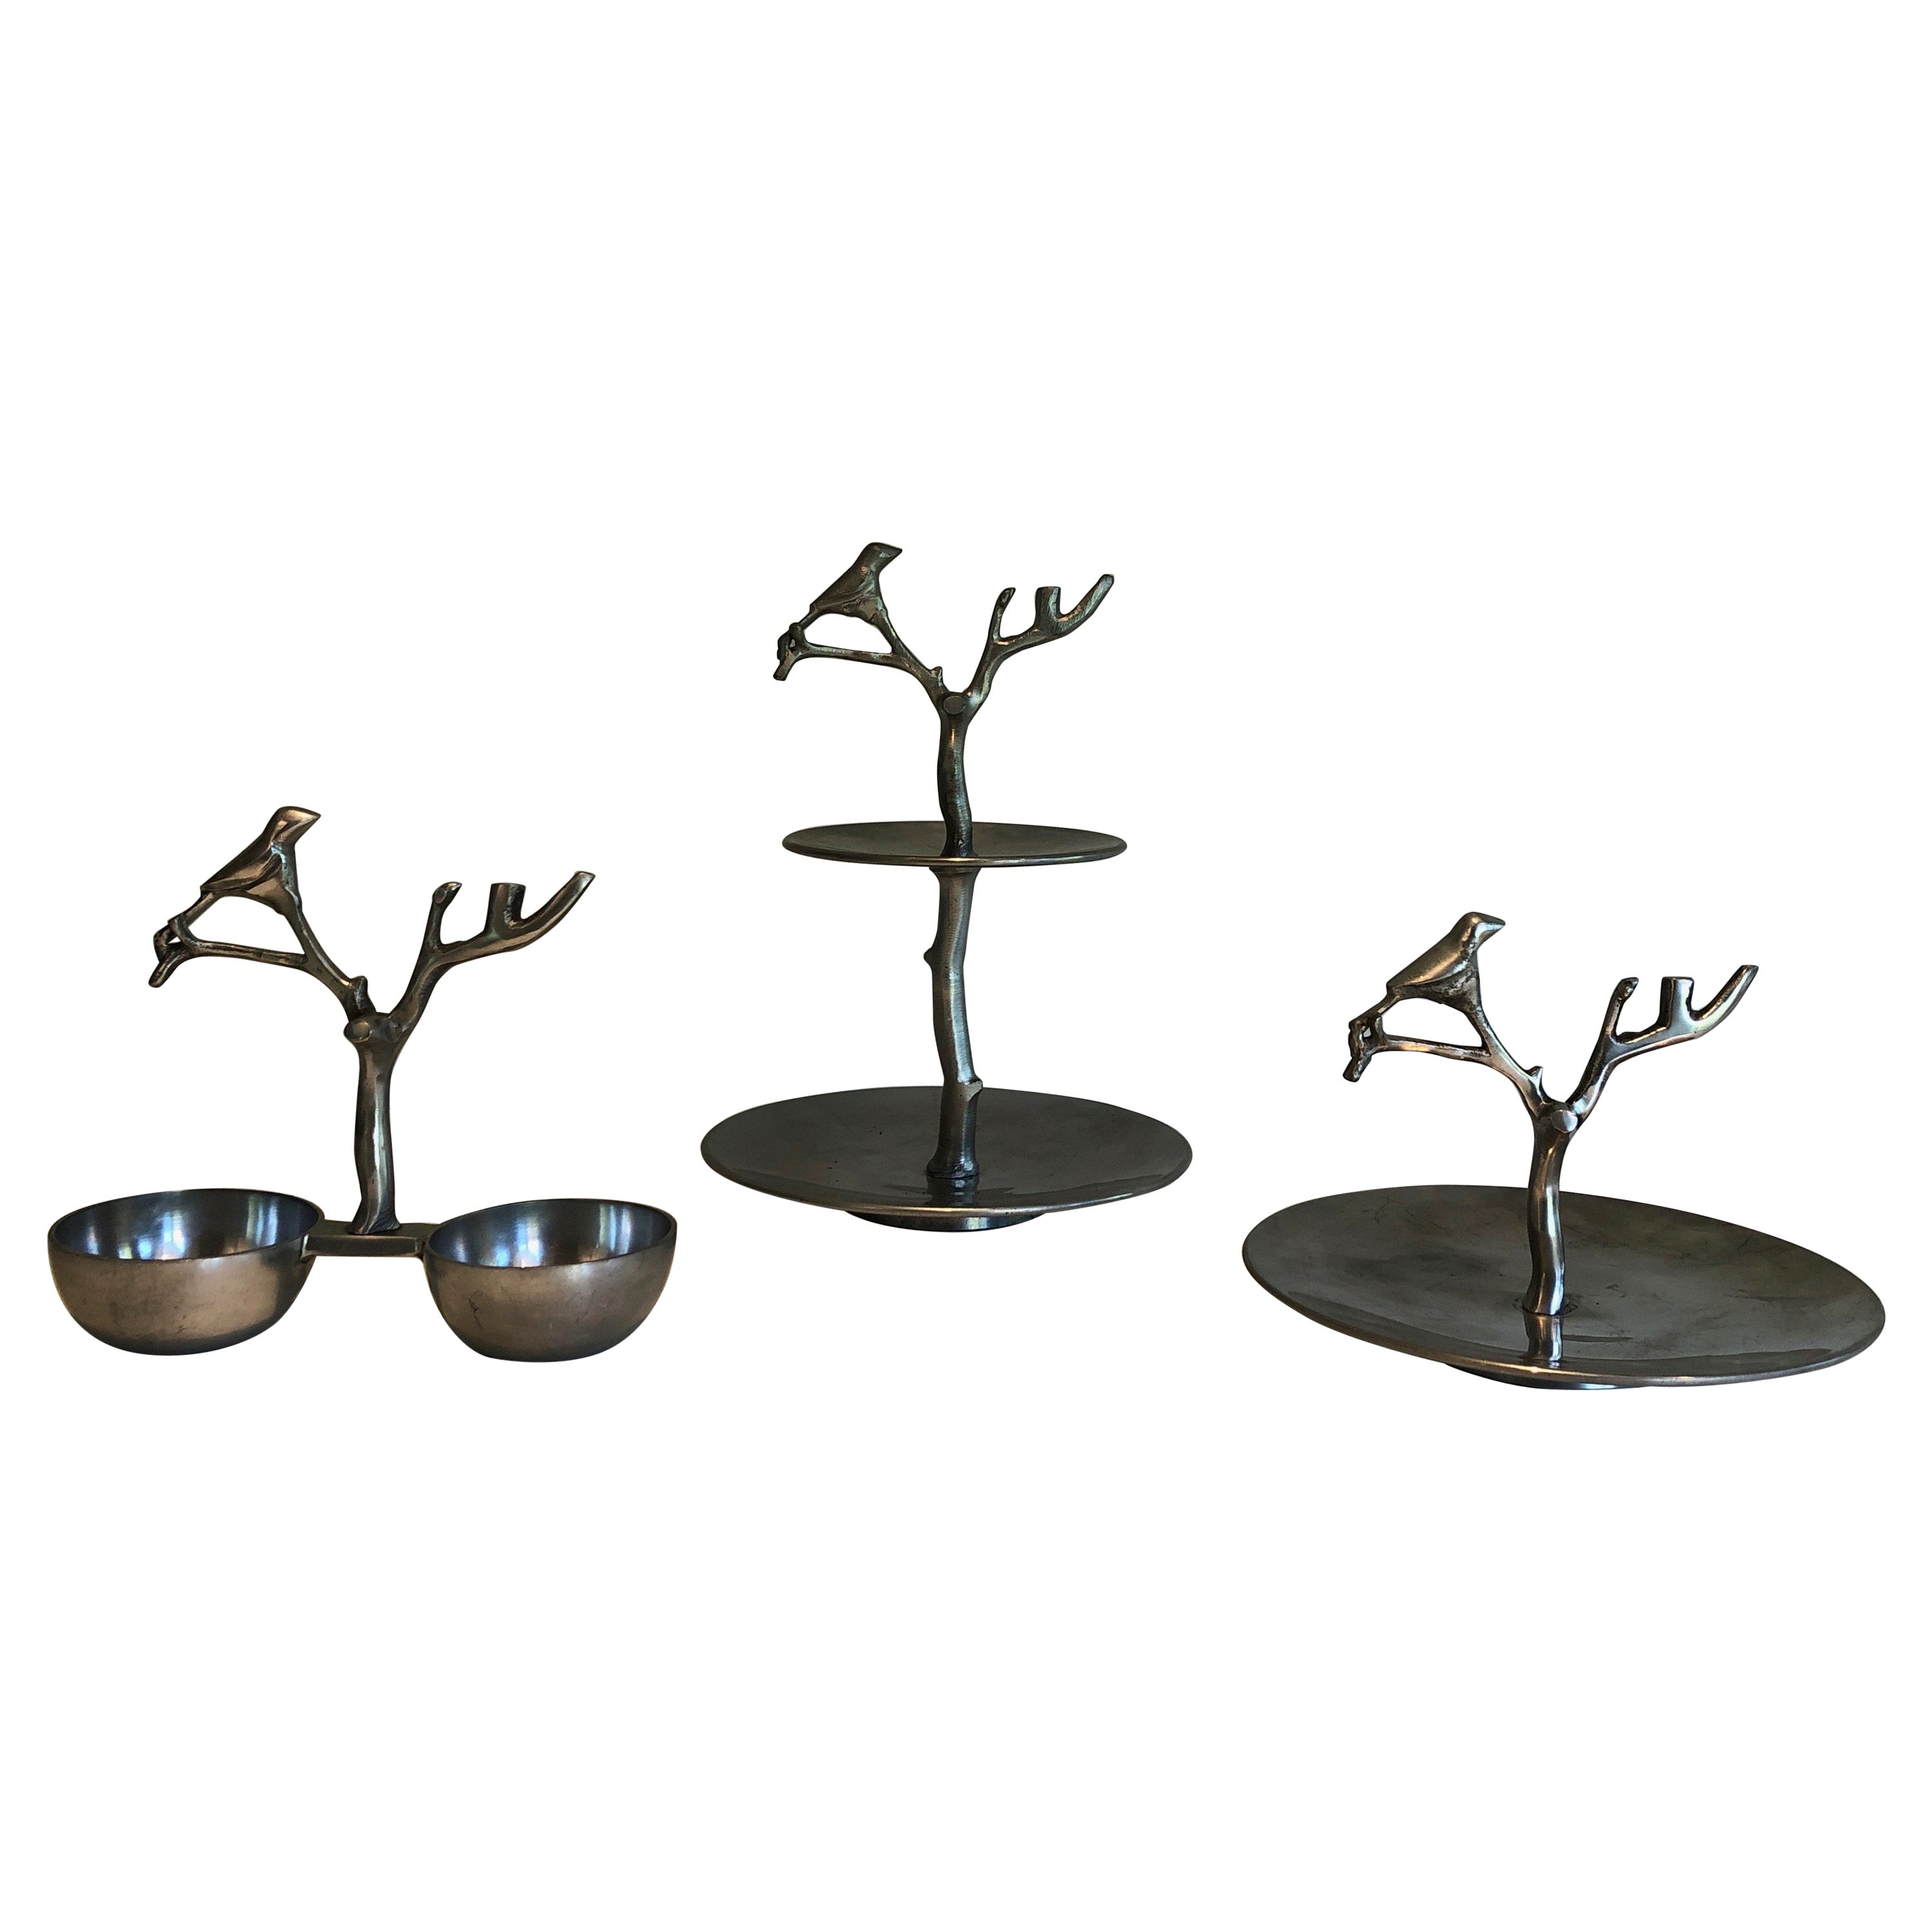 Set von 3 Aluminium-Serviergeschirrstücken mit Vögeln und Zweigen